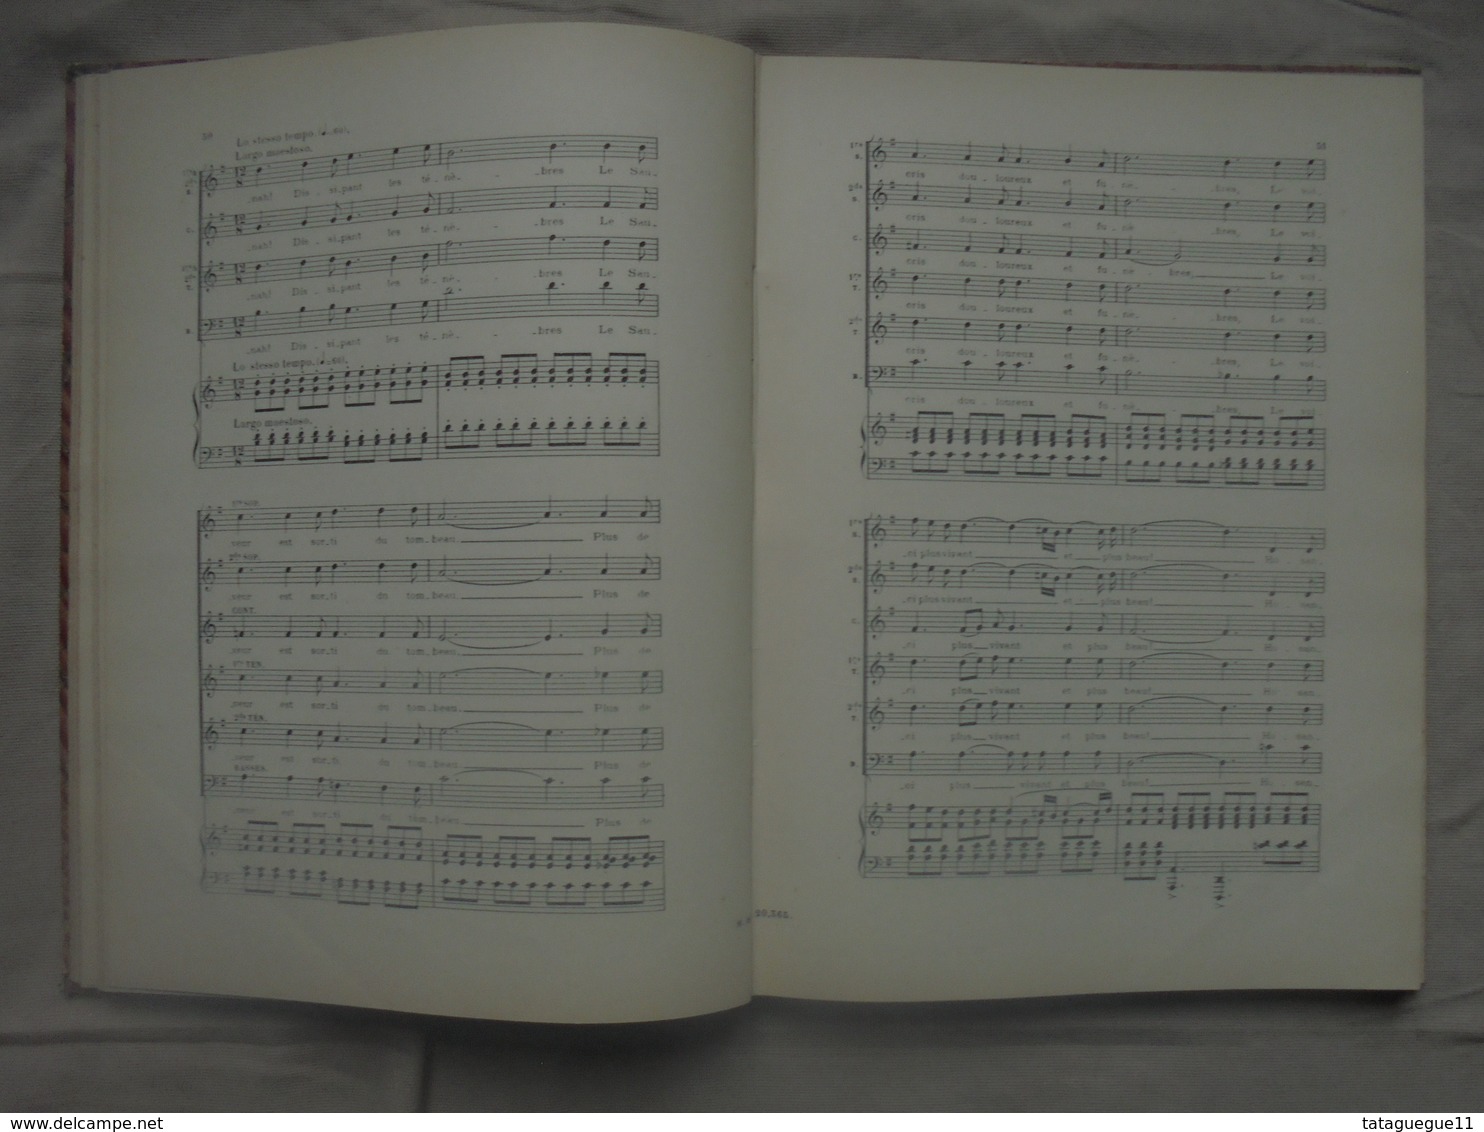 Ancien - Livre Partition CAVALLERIA RUSTICANA De J.Targioni-Tozzetti Et G. Menasci - Instrumento Di Tecla